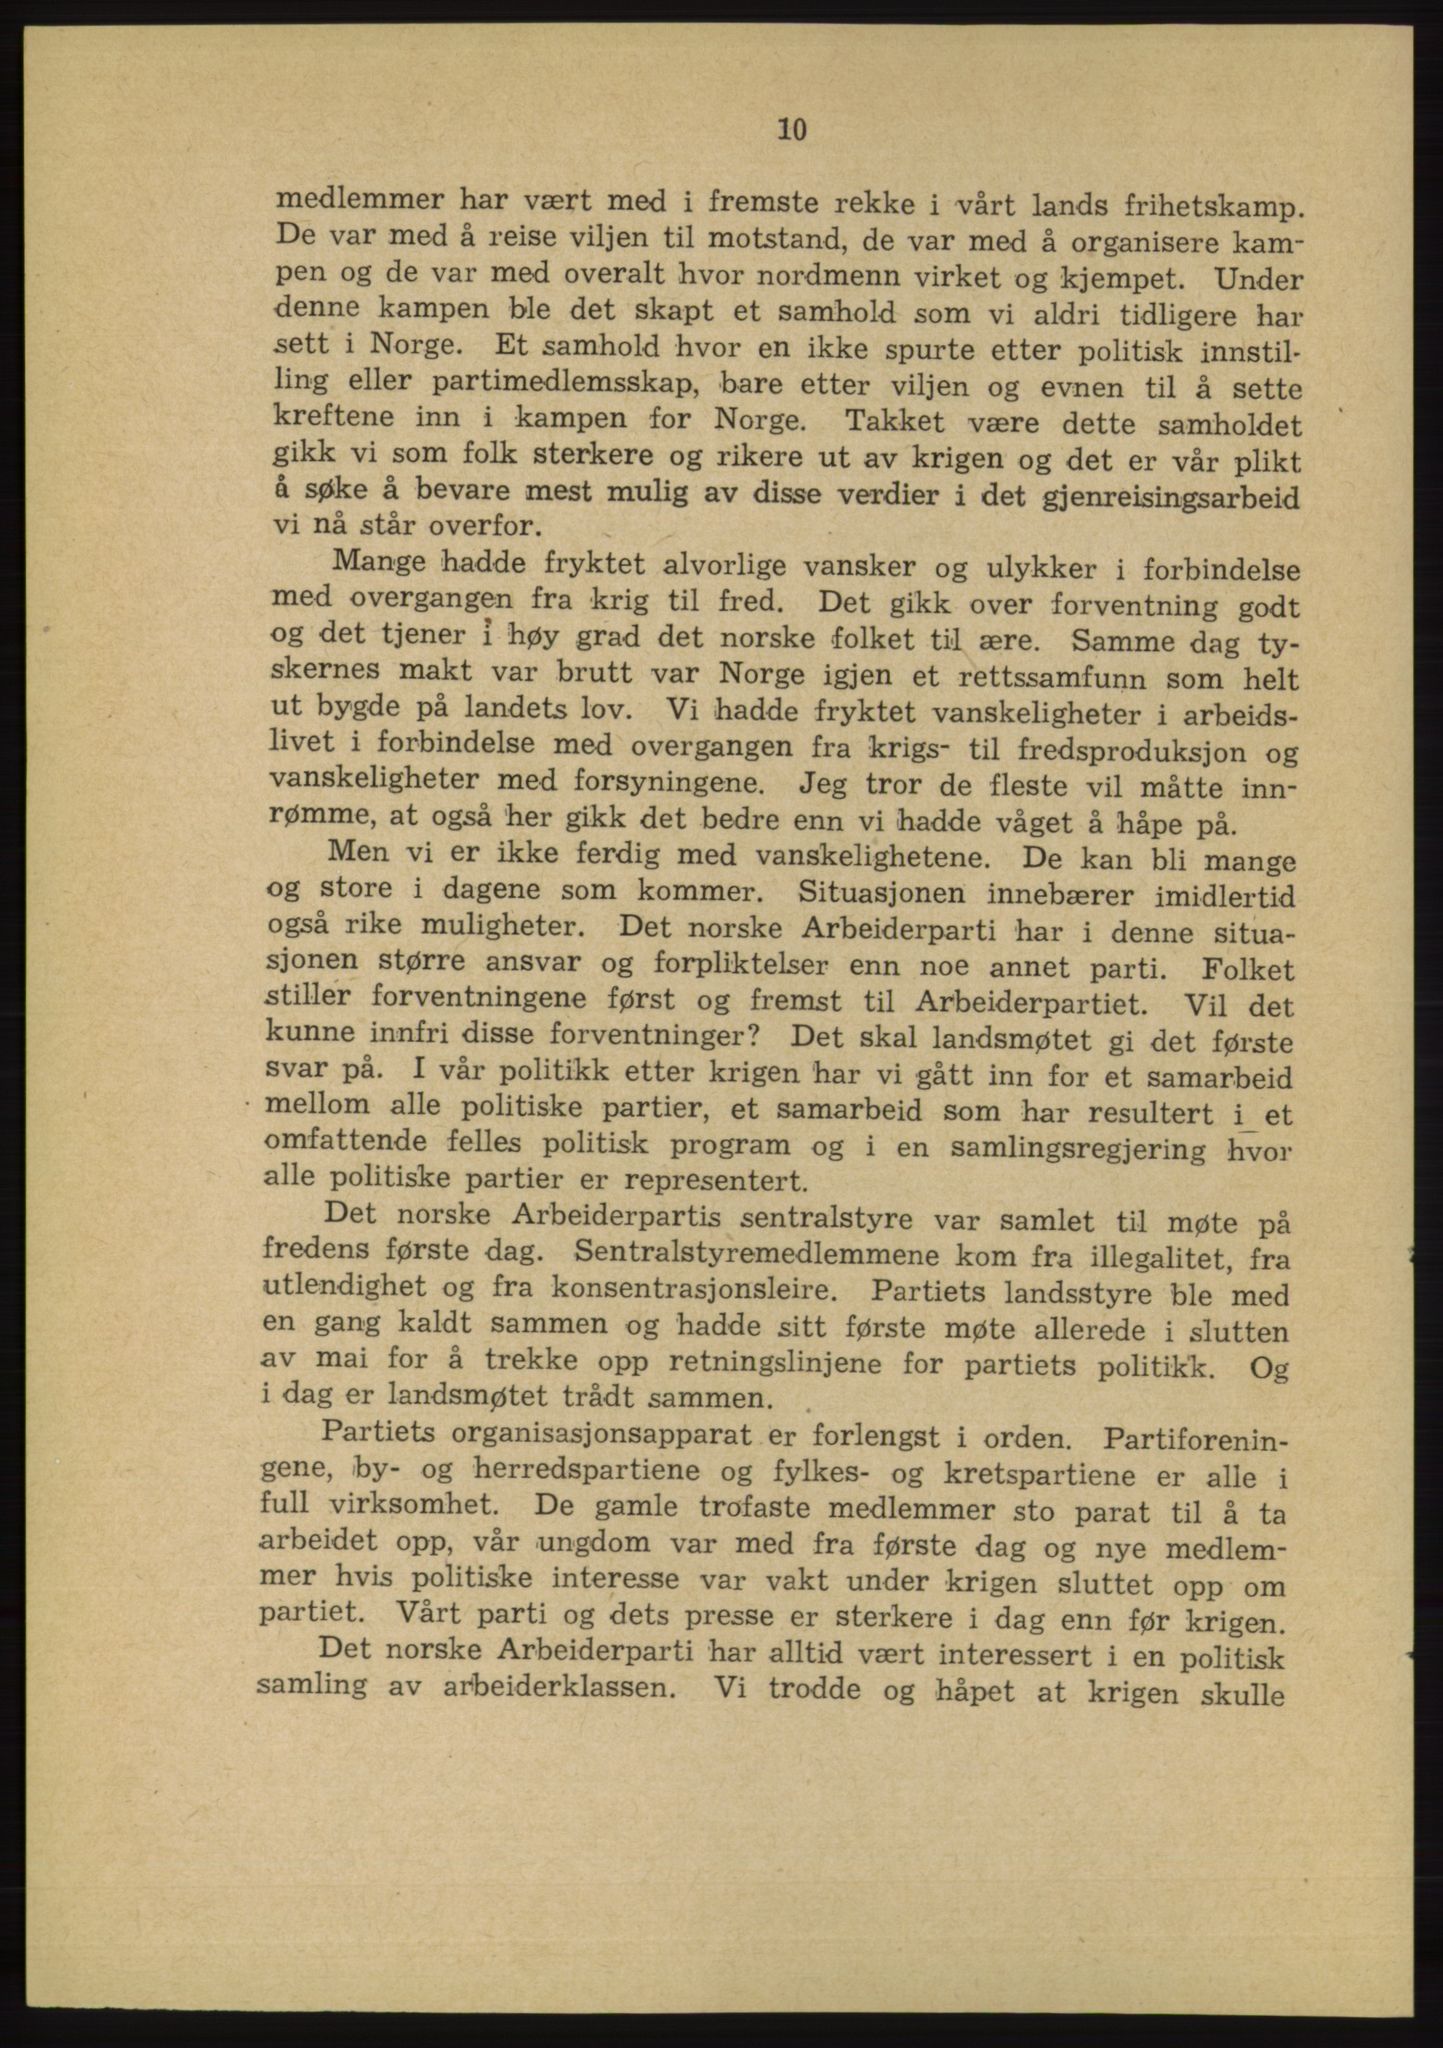 Det norske Arbeiderparti - publikasjoner, AAB/-/-/-: Protokoll over forhandlingene på landsmøtet 31. august og 1.-2. september 1945, 1945, s. 10